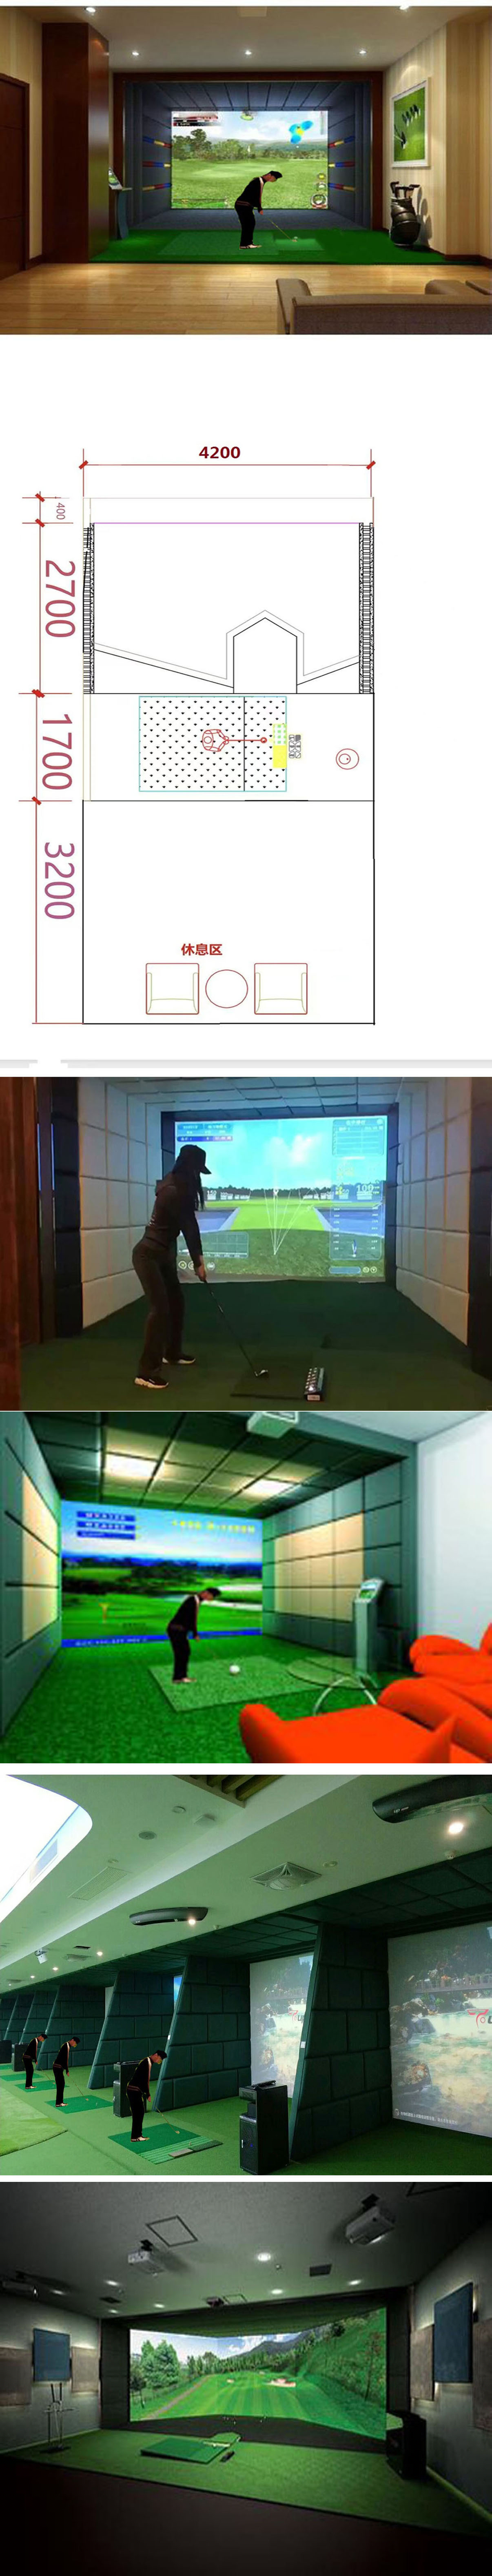 模拟高尔夫设备系统 1.jpg